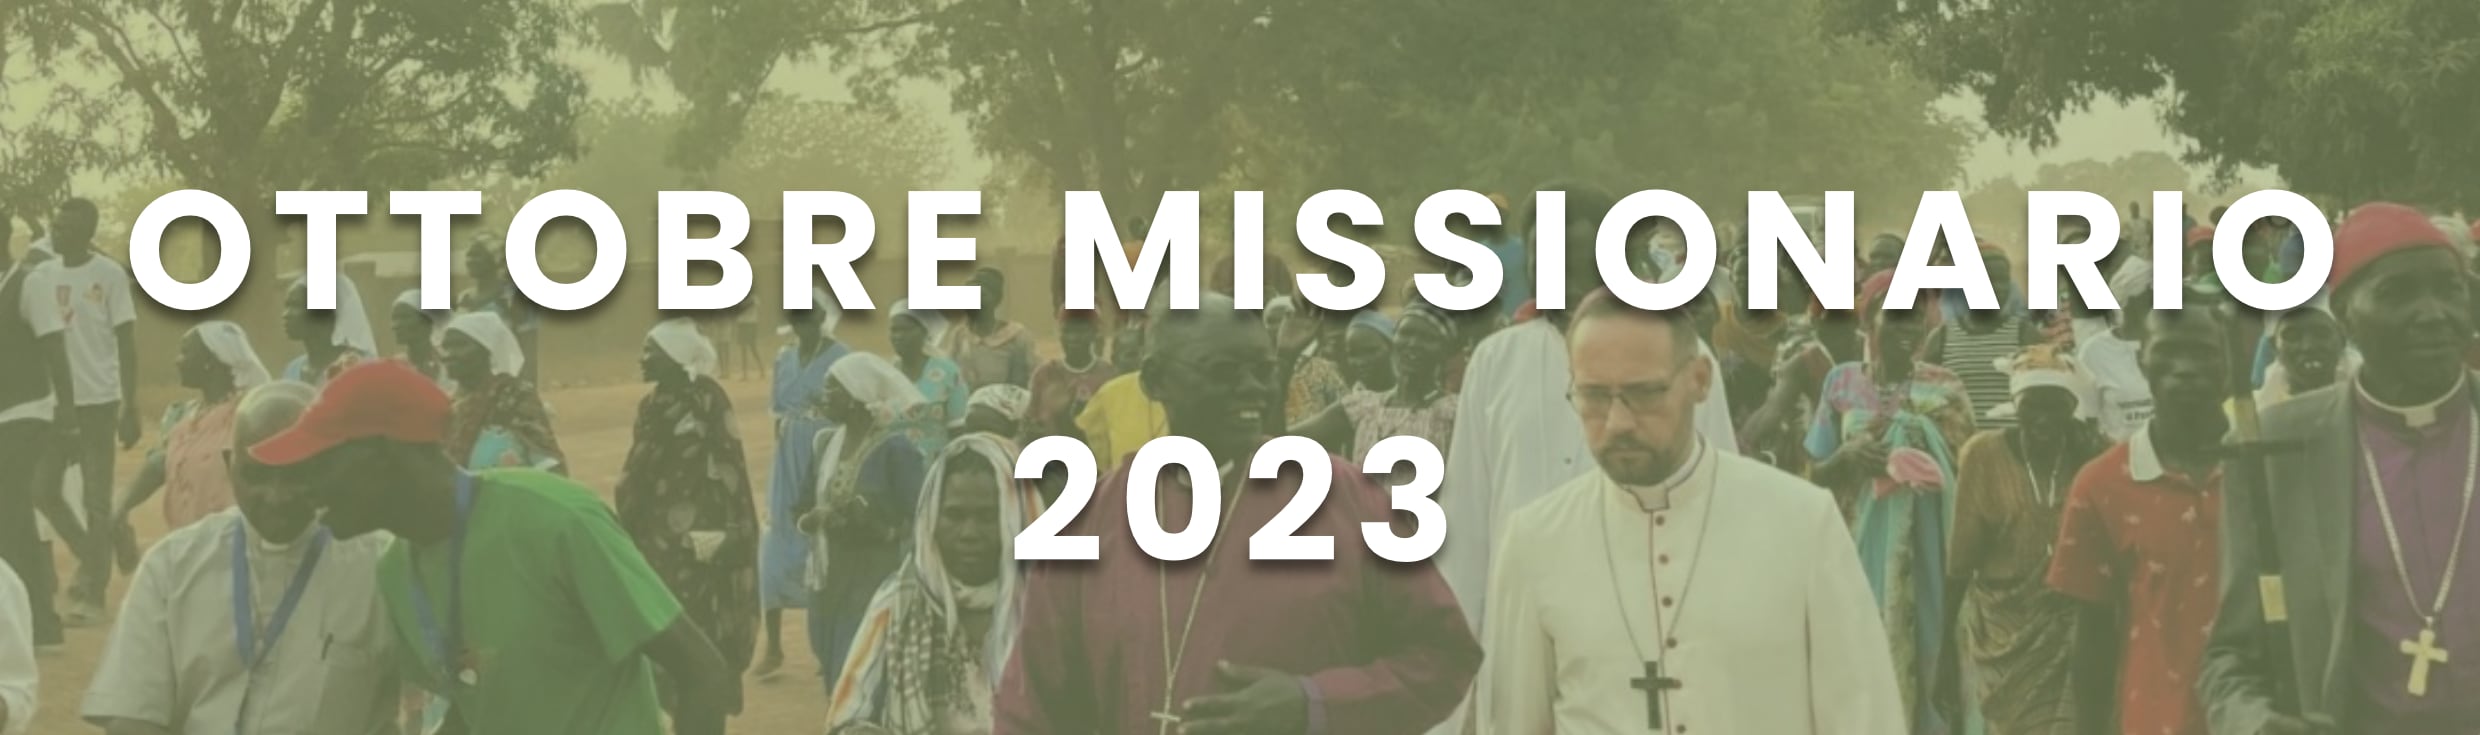 Ottobre Missionario 2023